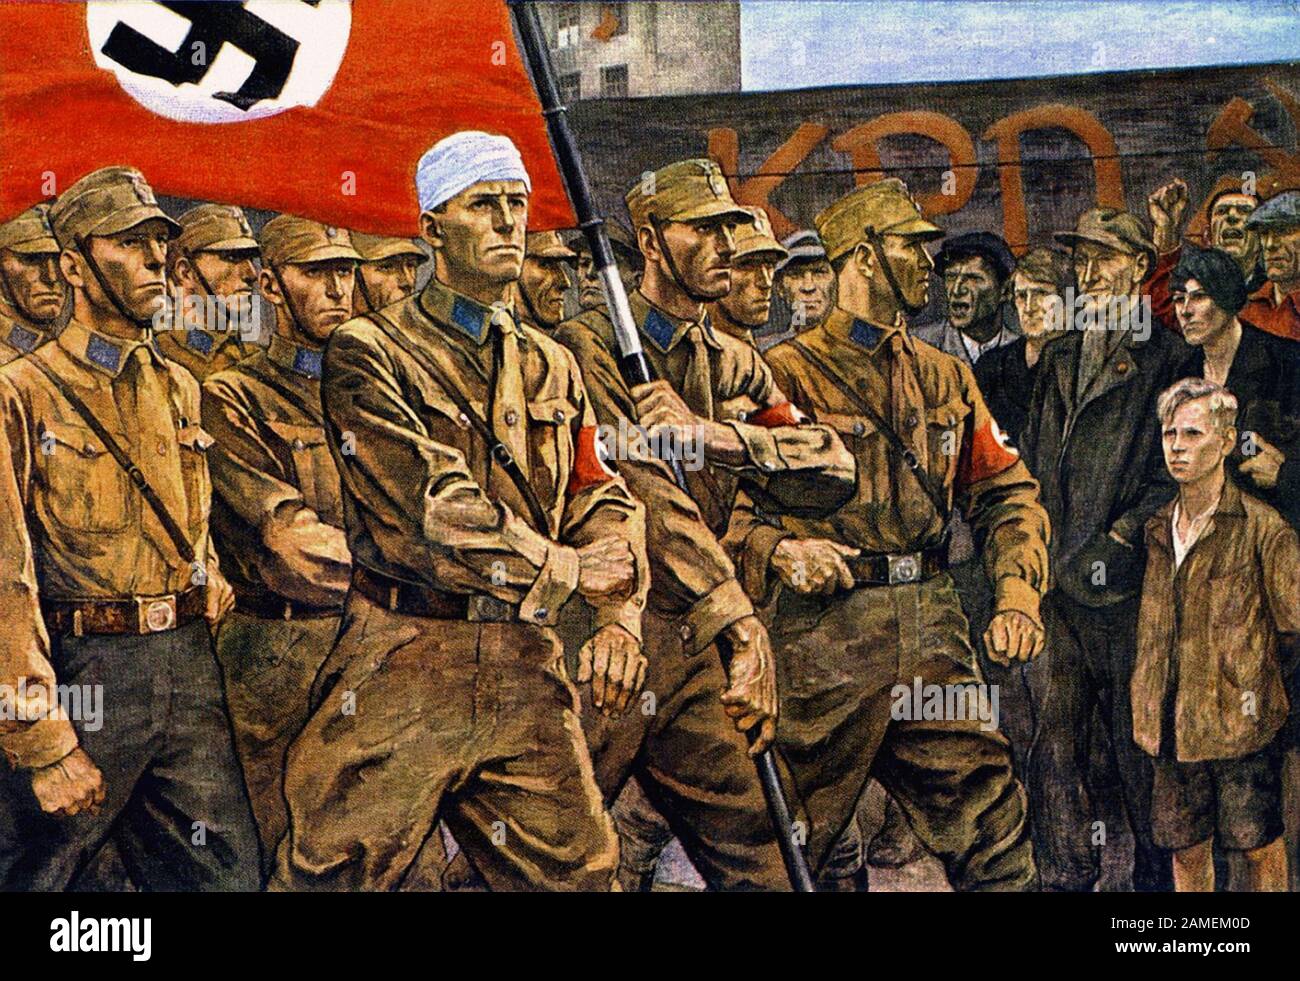 Carte postale du propoganda nazi. Marais sa (Sturmabteilung). Par Heinz Lohmann Banque D'Images